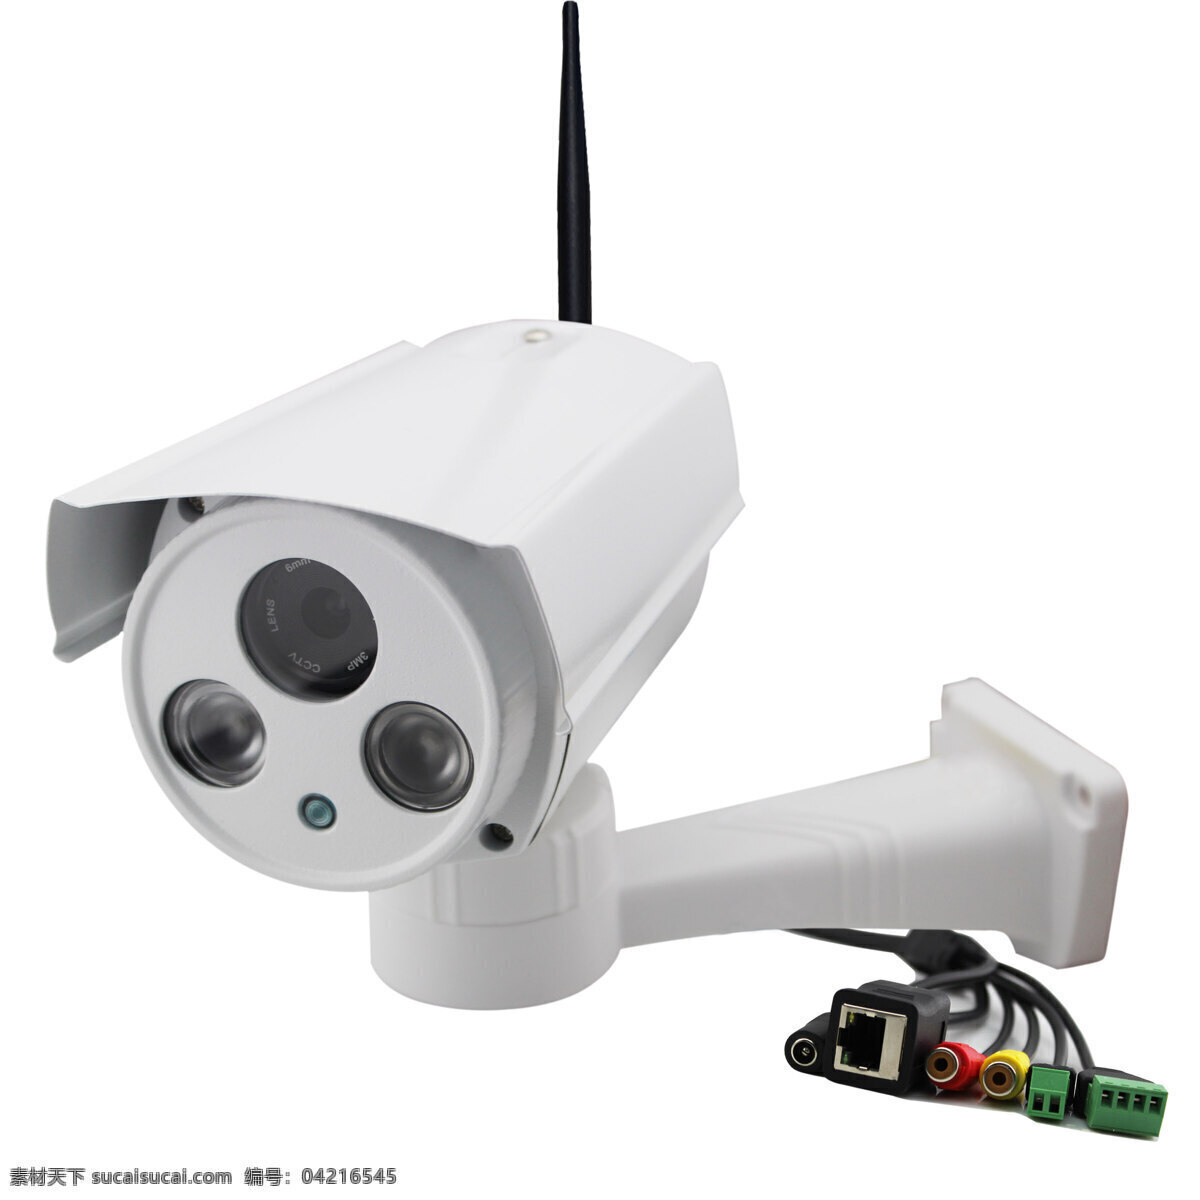 带云台枪机 无线摄像机 无线 监控 安防 高清图 云台 枪机 ipcamer 工业生产 现代科技 产品图